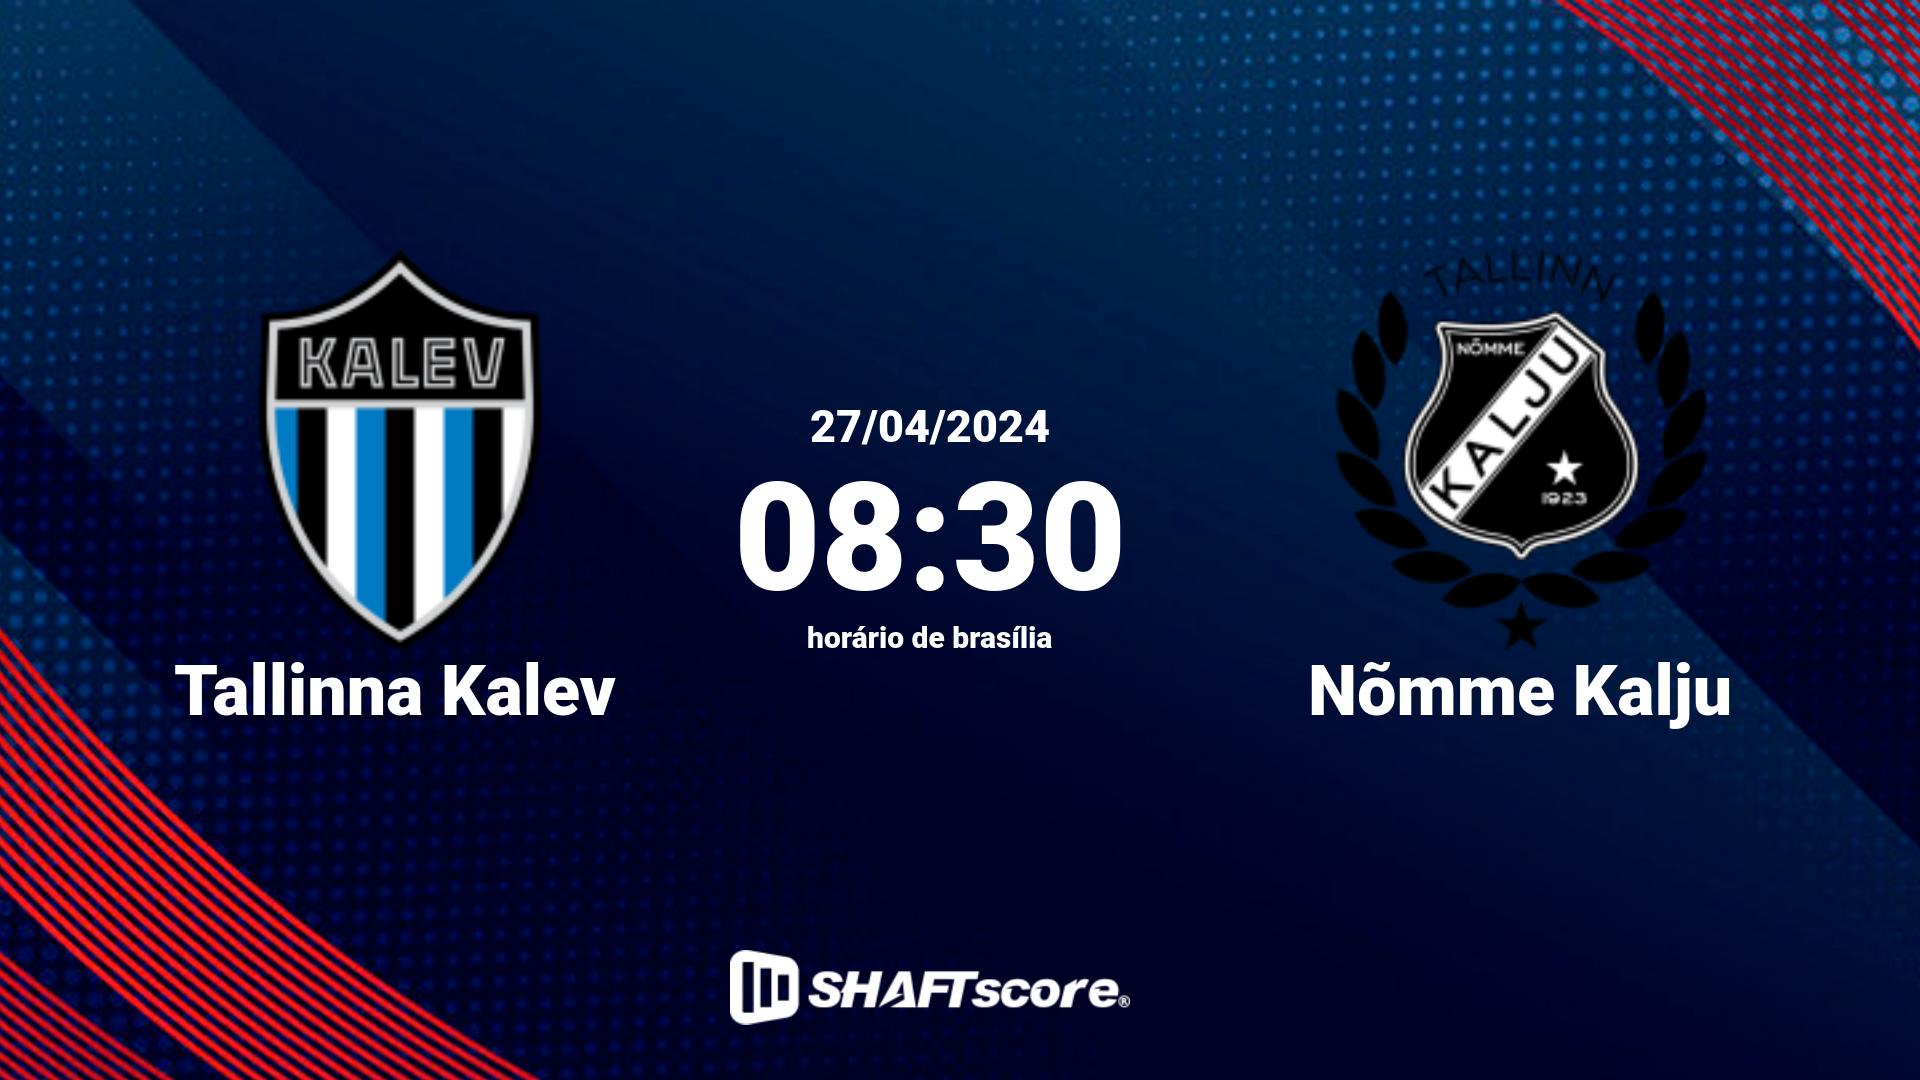 Estatísticas do jogo Tallinna Kalev vs Nõmme Kalju 27.04 08:30